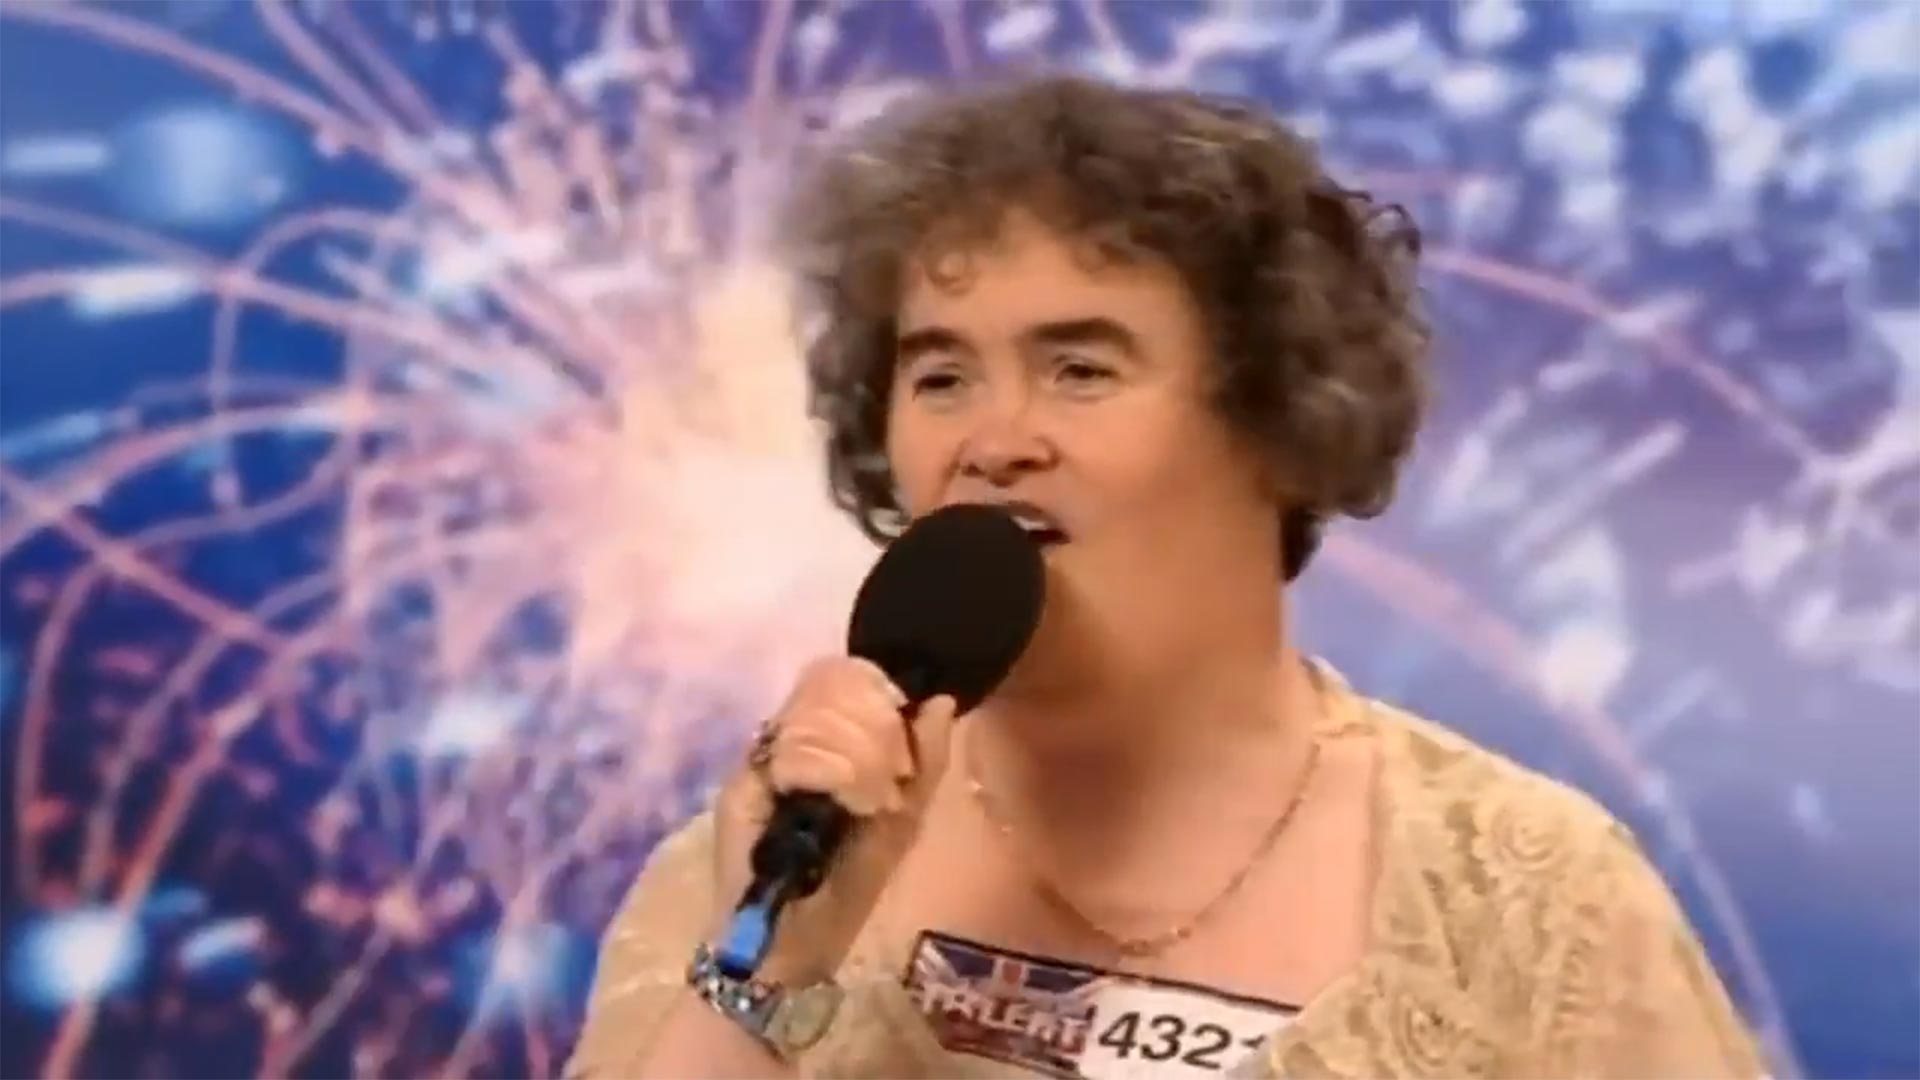 Susan Boyle irrumpió con una sorpresiva presentación en un concurso de talentos en la televisión británica. Su vida cambió para siempre en ese momento. En poco tiempo se convirtió en una súper estrella. Ya vendió más de 30 millones de copias